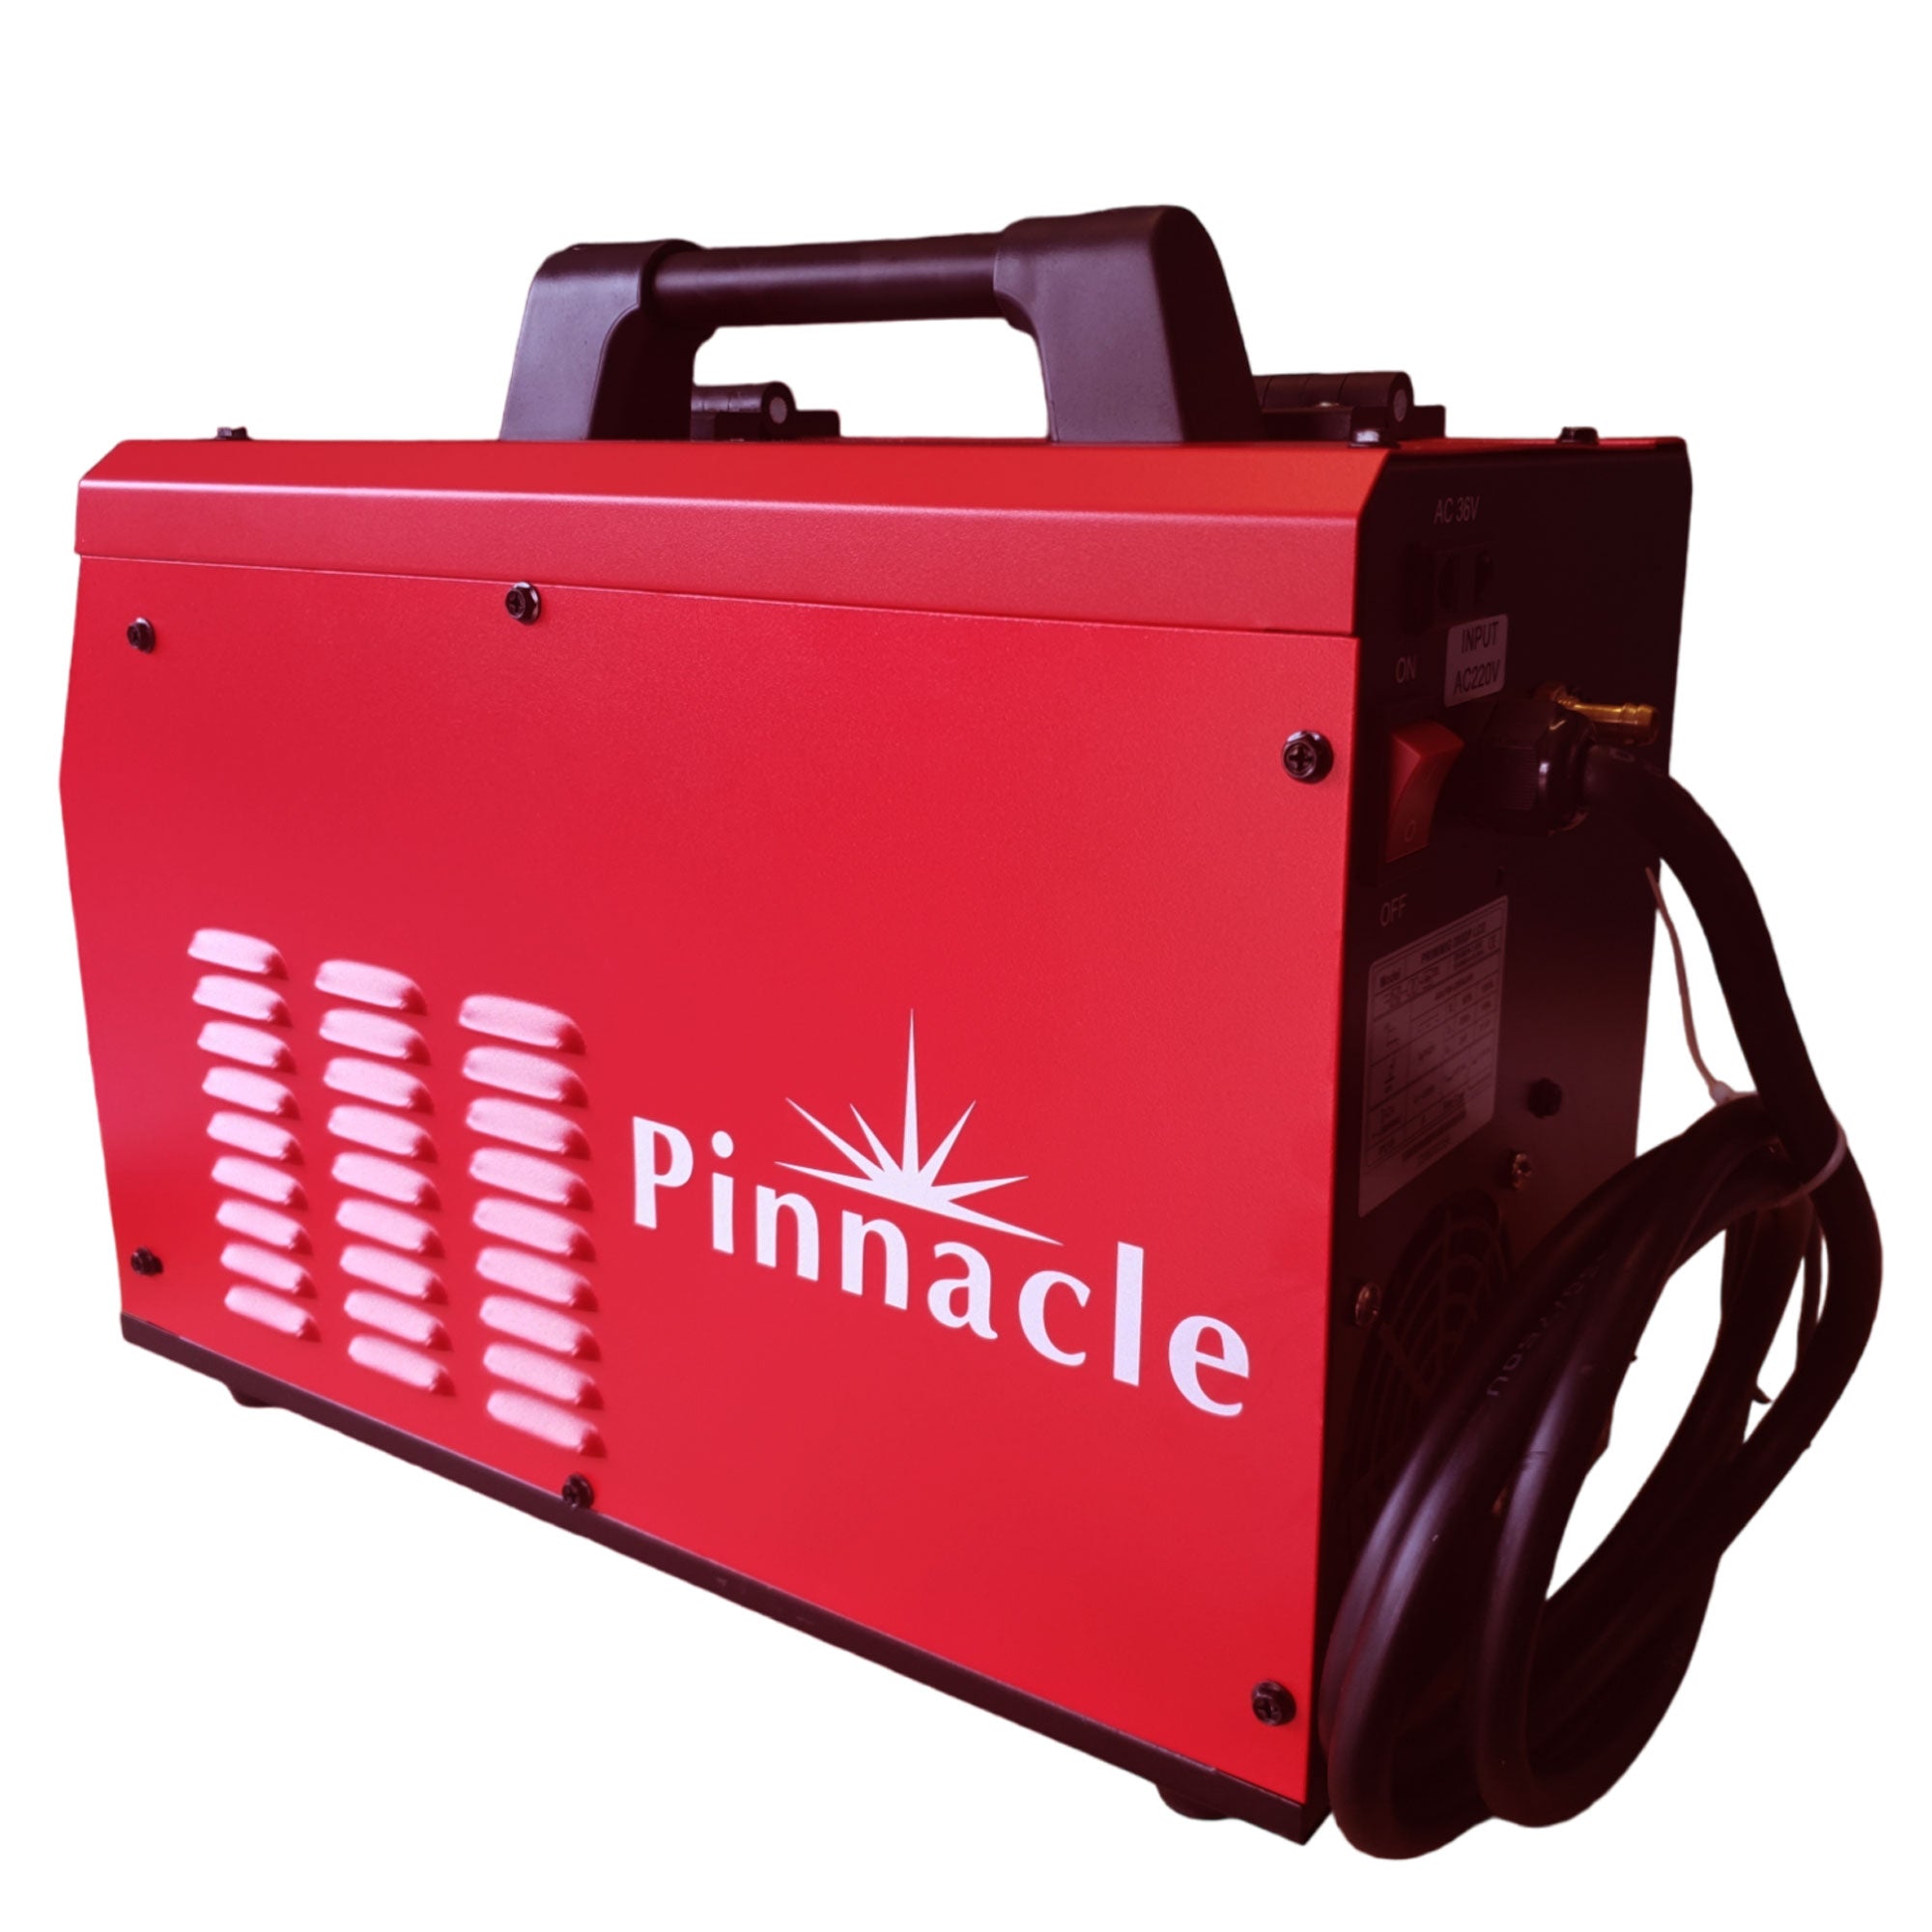 Pinnacle PrimiMIG 200DP - Double Pulse MIG Welding Machine - Pinnacle Welding